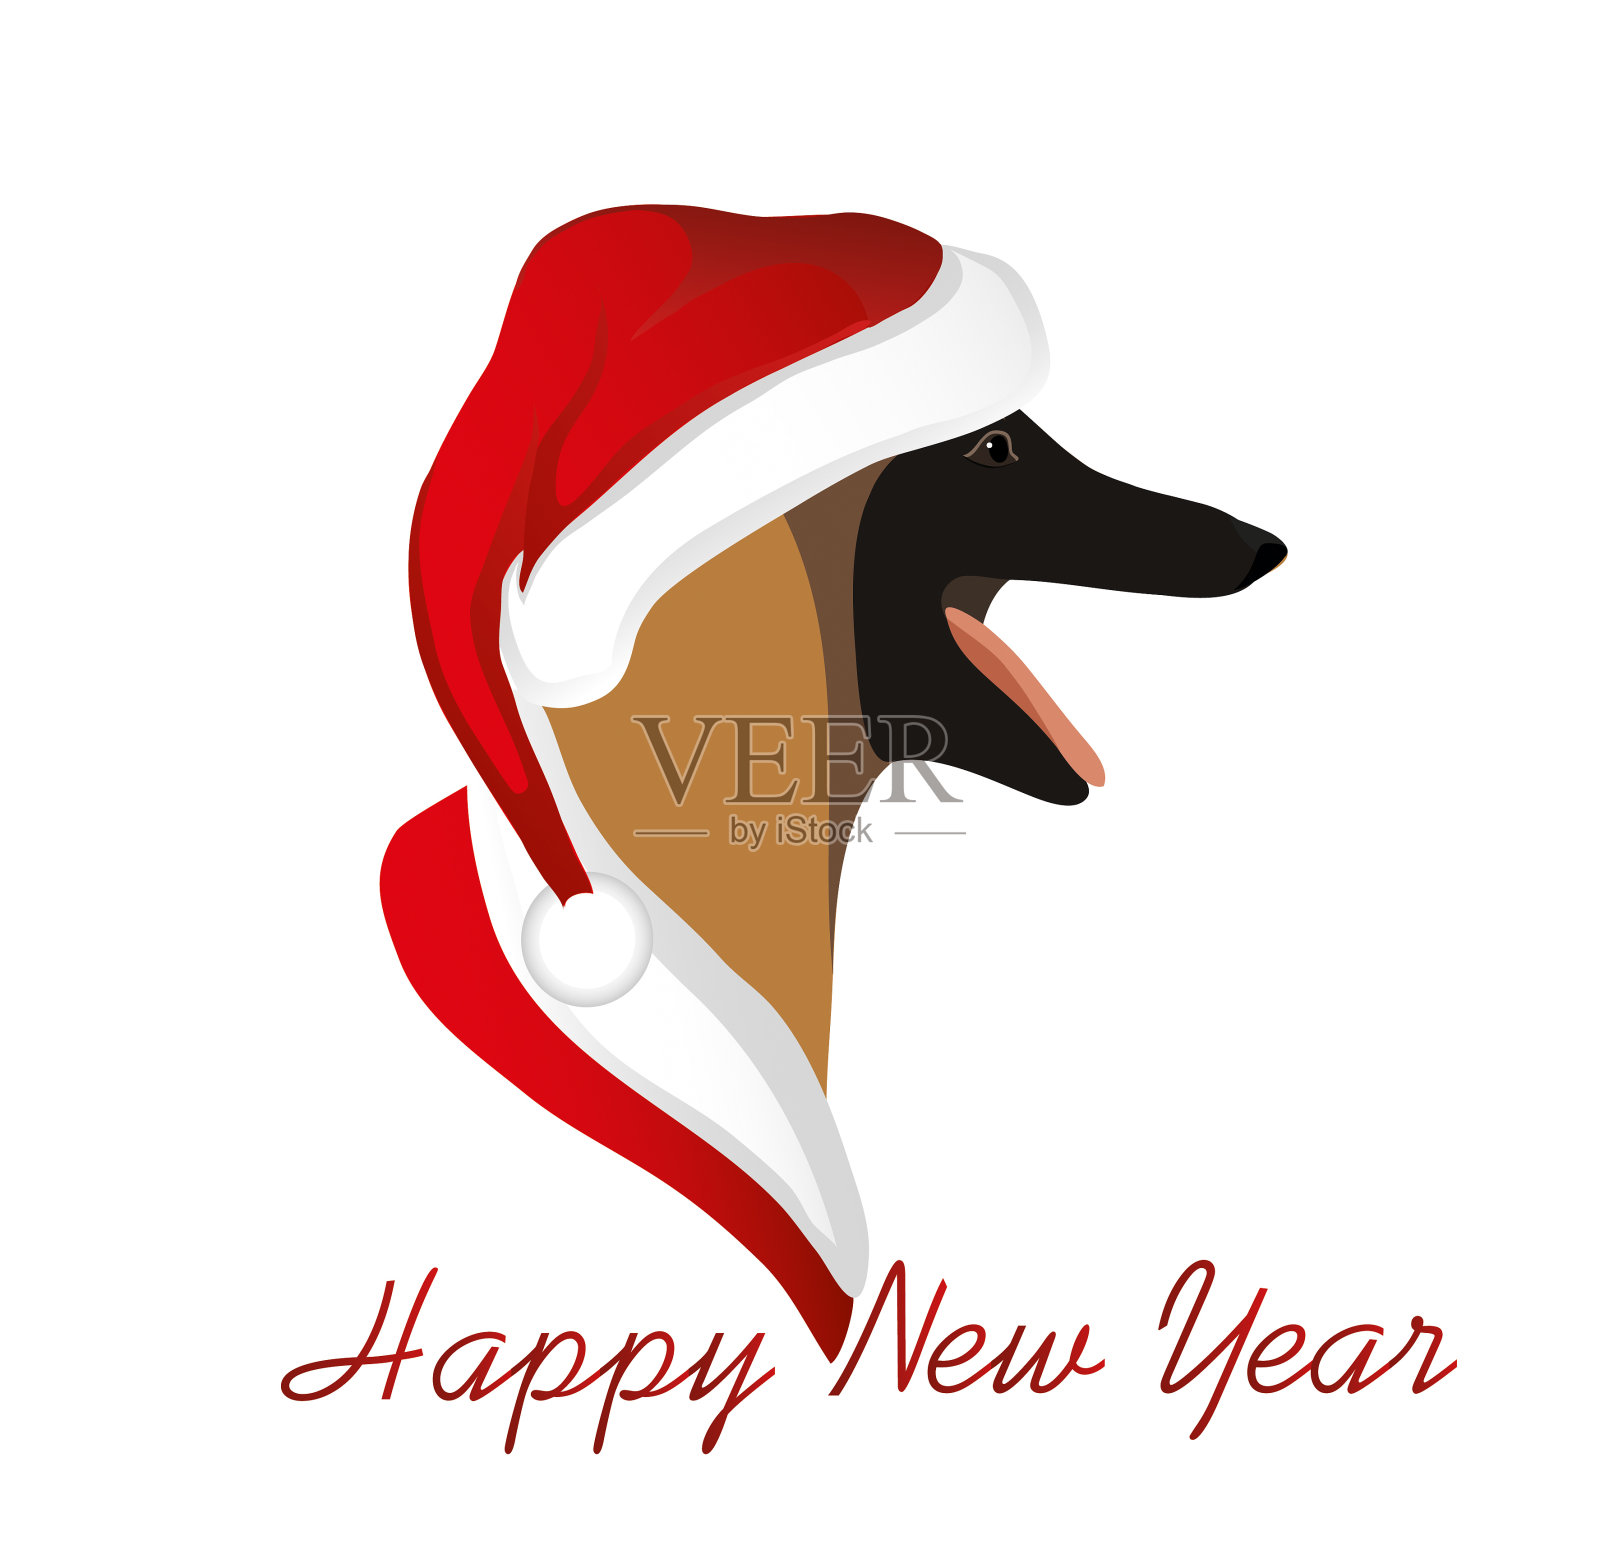 一只戴着圣诞老人帽子的狗。比利时牧羊犬马利诺斯犬。2018年的象征。向量。贺卡或圣诞请帖插画图片素材